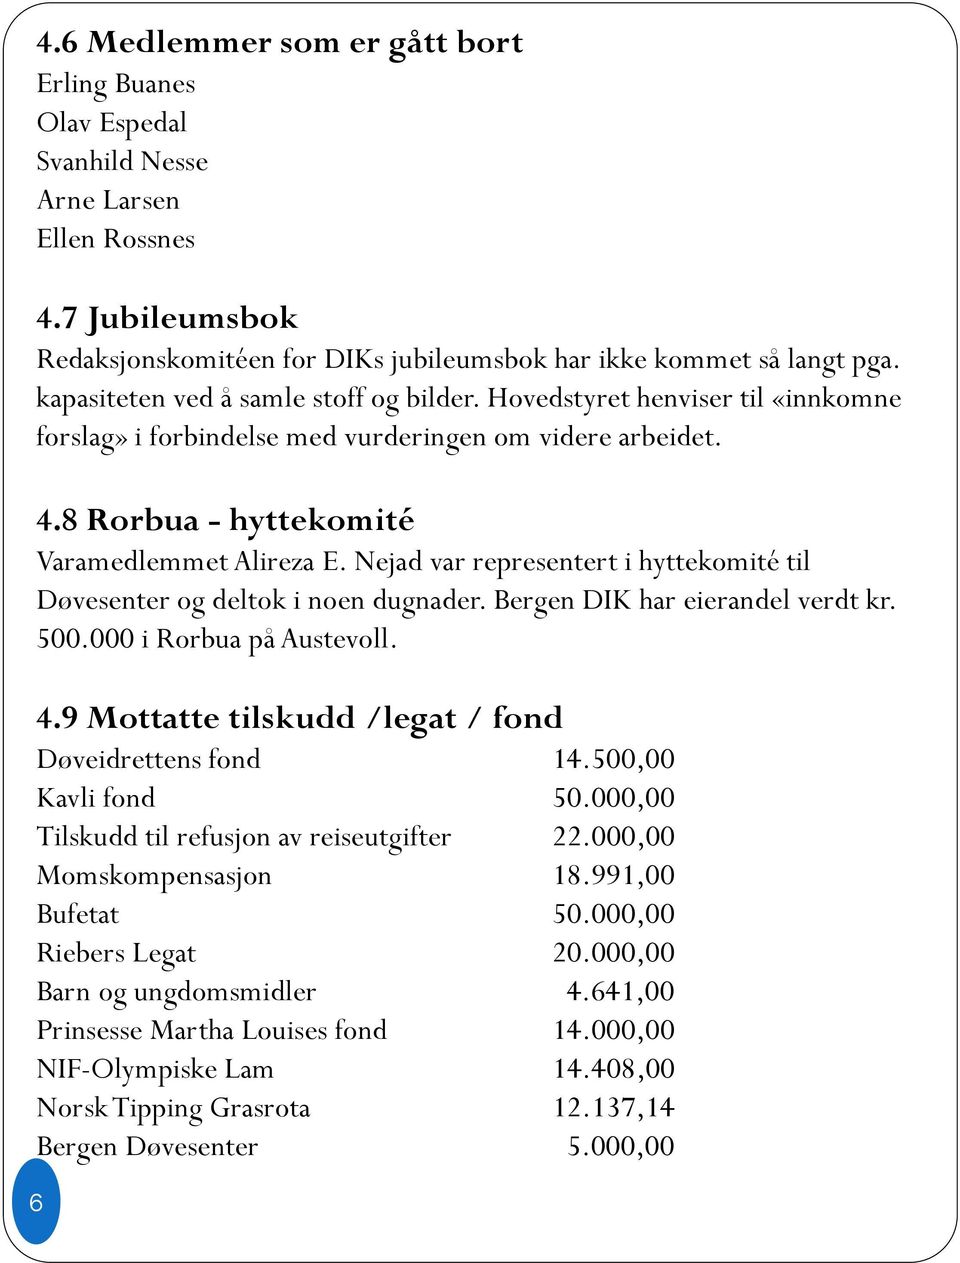 Nejad var representert i hyttekomité til Døvesenter og deltok i noen dugnader. Bergen DIK har eierandel verdt kr. 500.000 i Rorbua på Austevoll. 4.